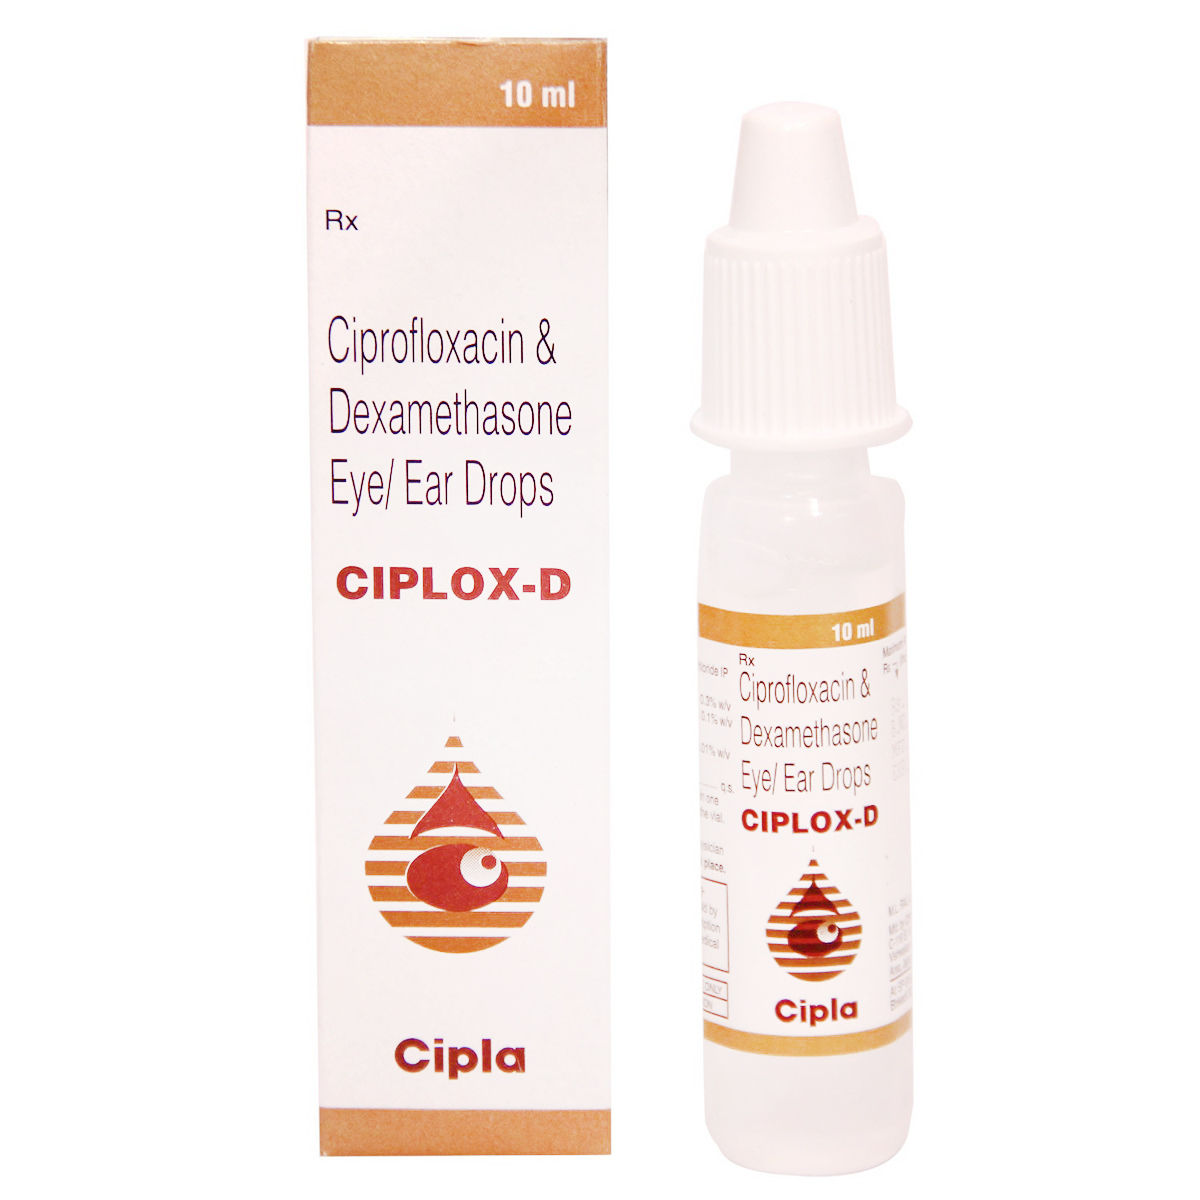 Ciplox-D Eye/Ear Drops 10 ml Price, Uses, Side Effects ...